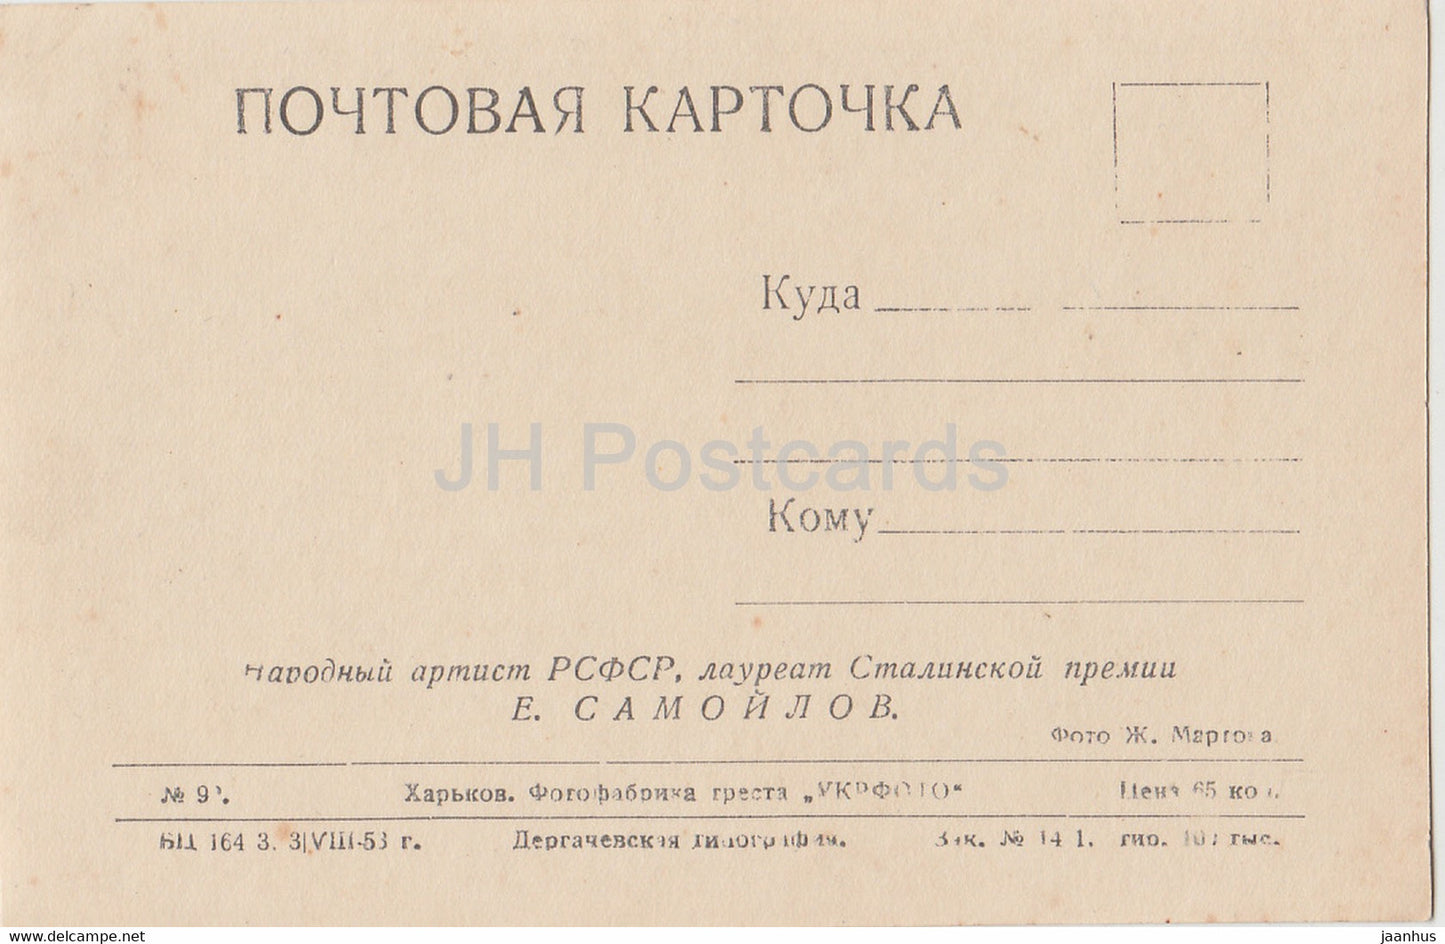 Soviet actor Yevgeny Samoylov - Film - Movie - 1953 - old postcard - Russia USSR - unused